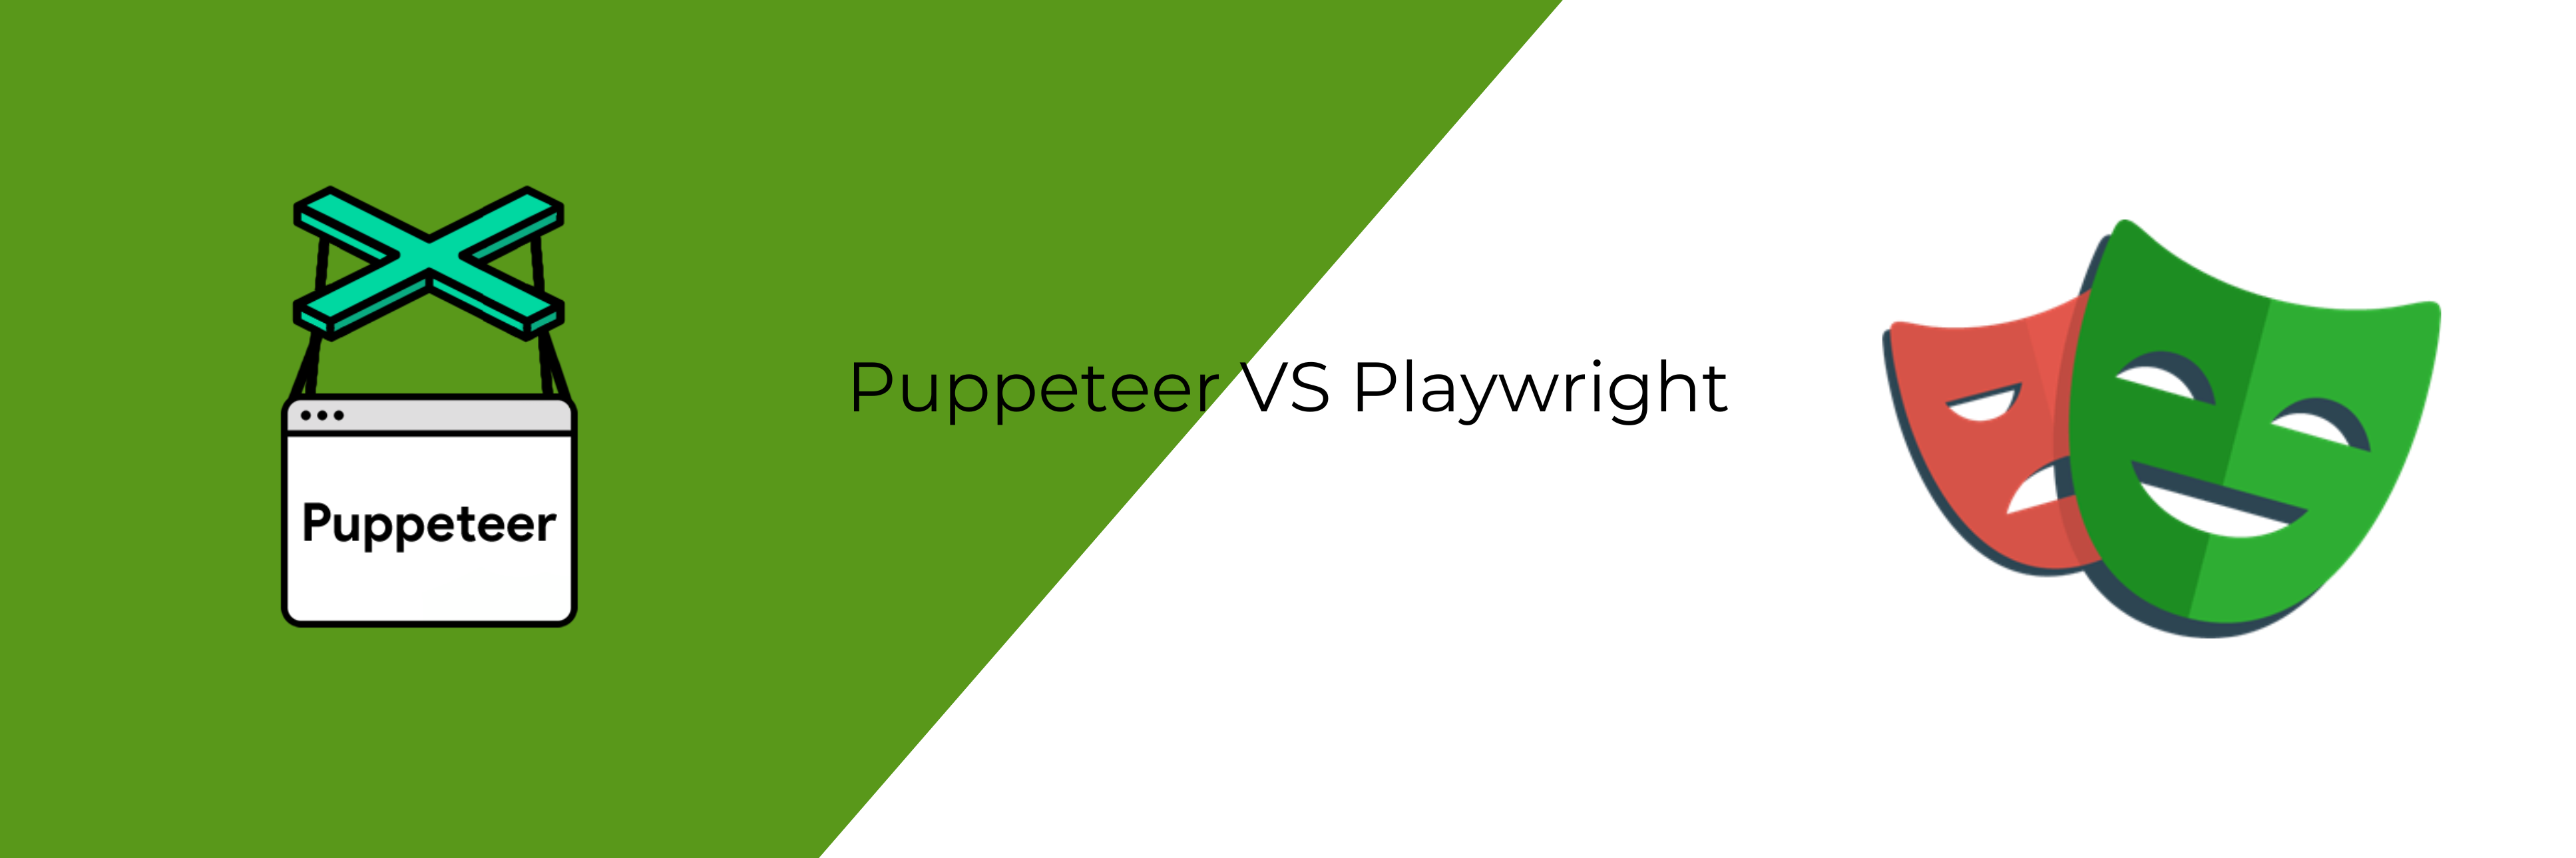 разница между puppeteer и playwright